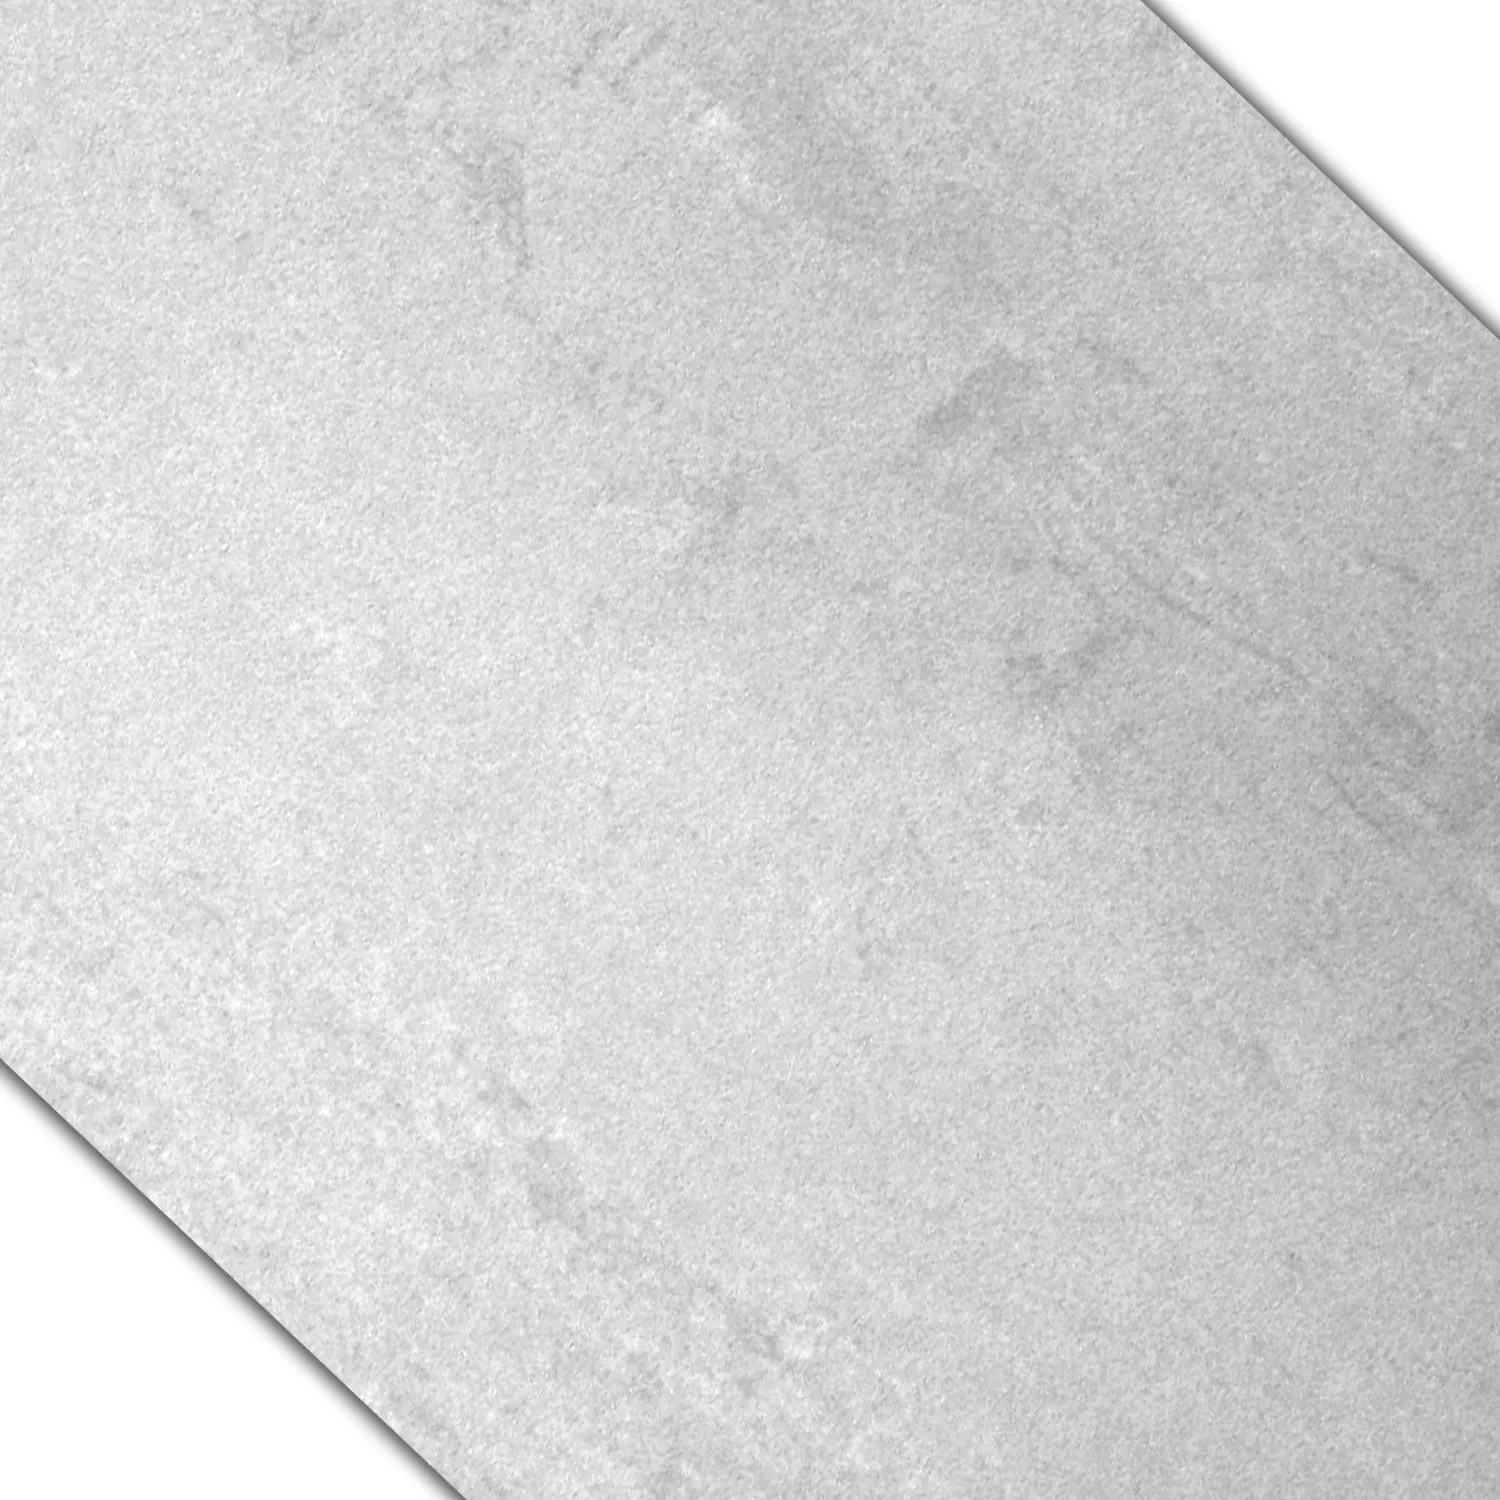 Muster Bodenfliesen Madeira Weiss Anpoliert 60x60cm